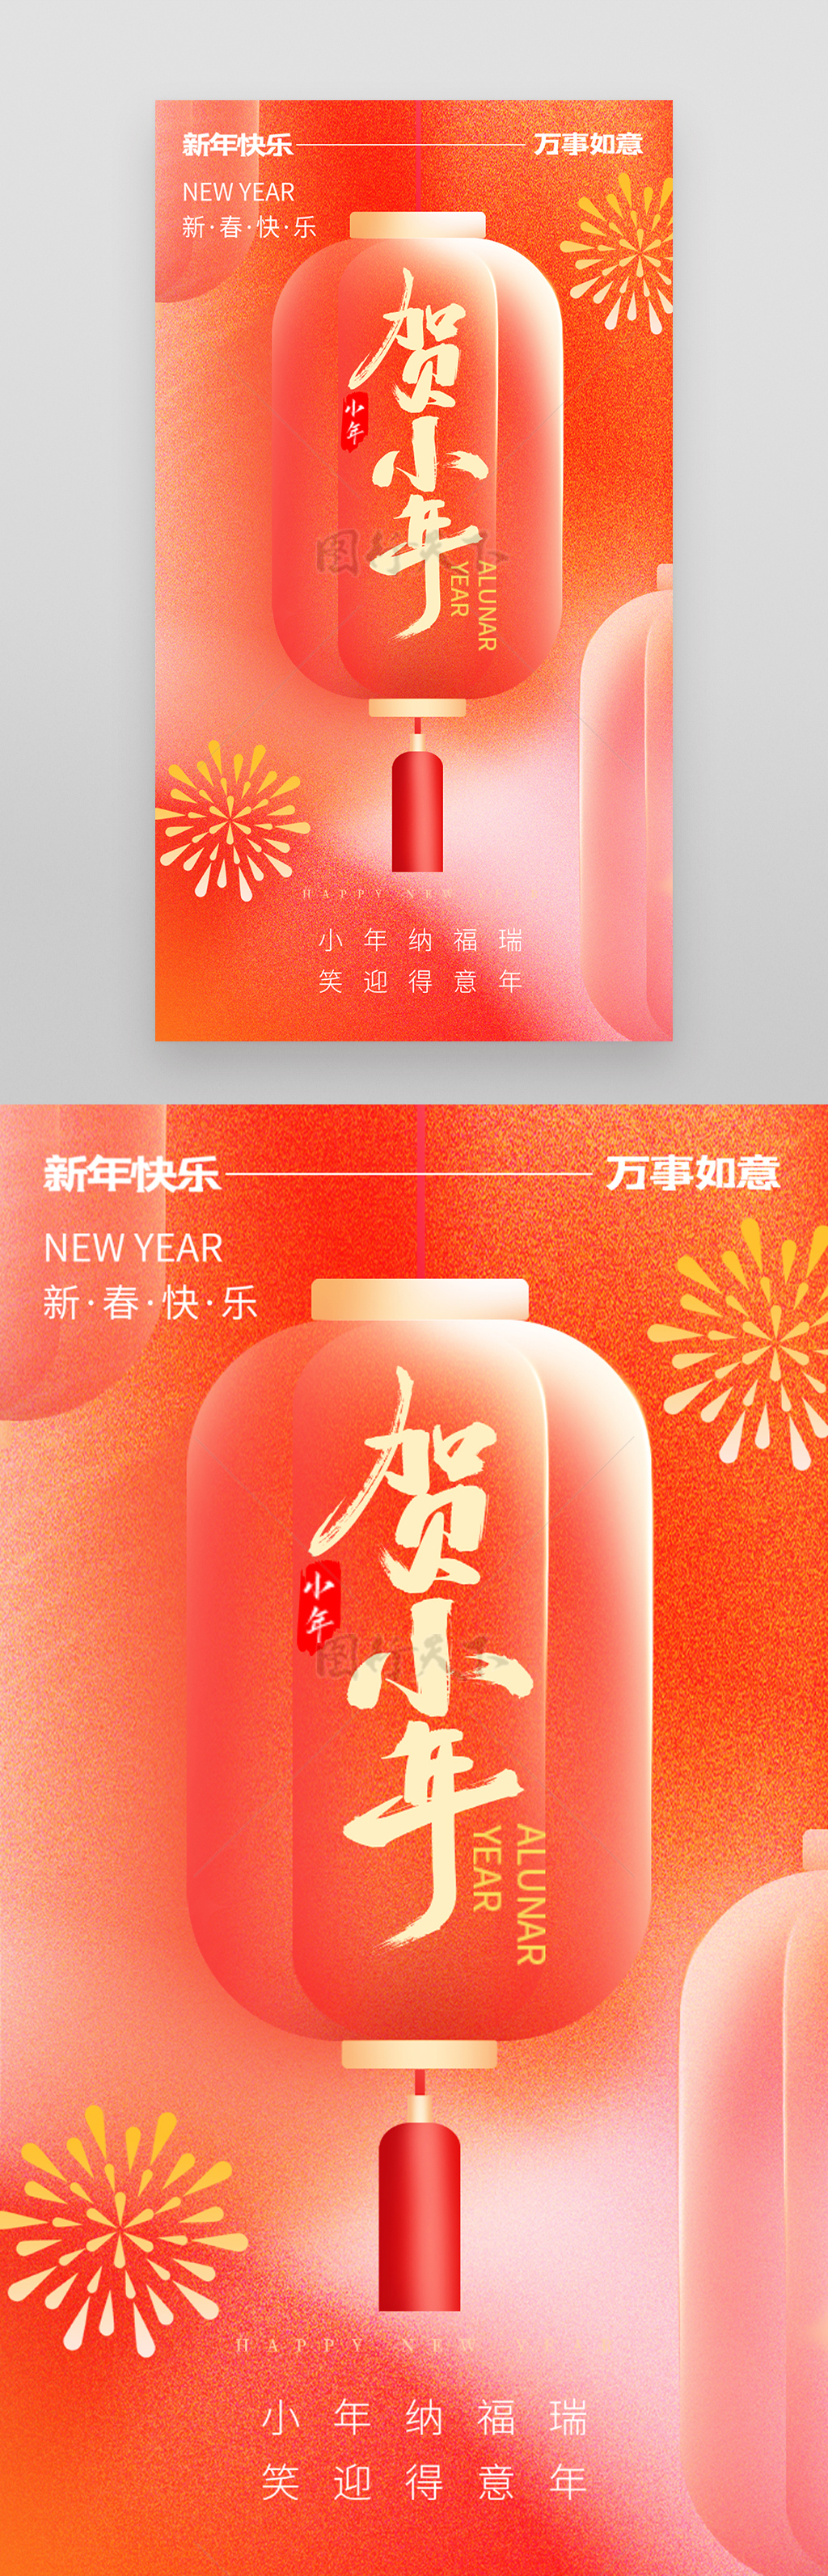 红色中国风贺小年营销广告海报